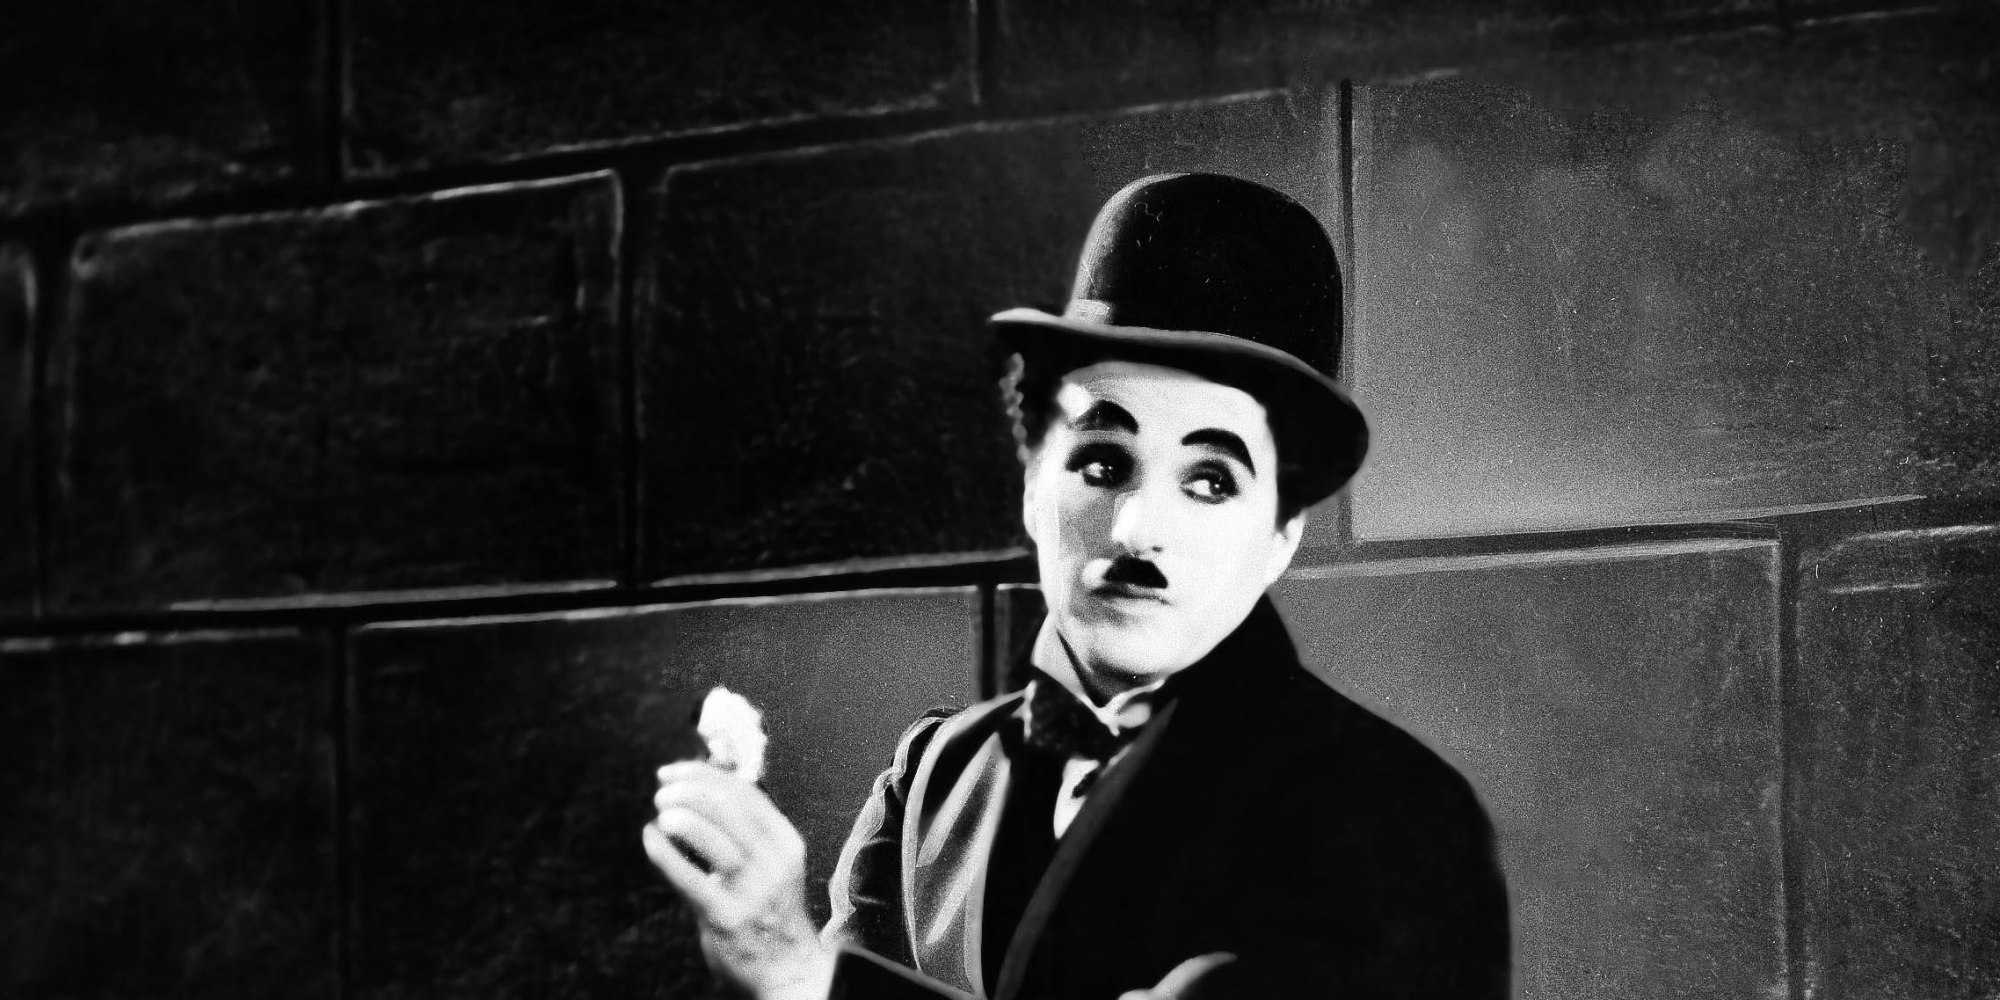 Emisoras Unidas - ¿Quién fue Charles Chaplin?